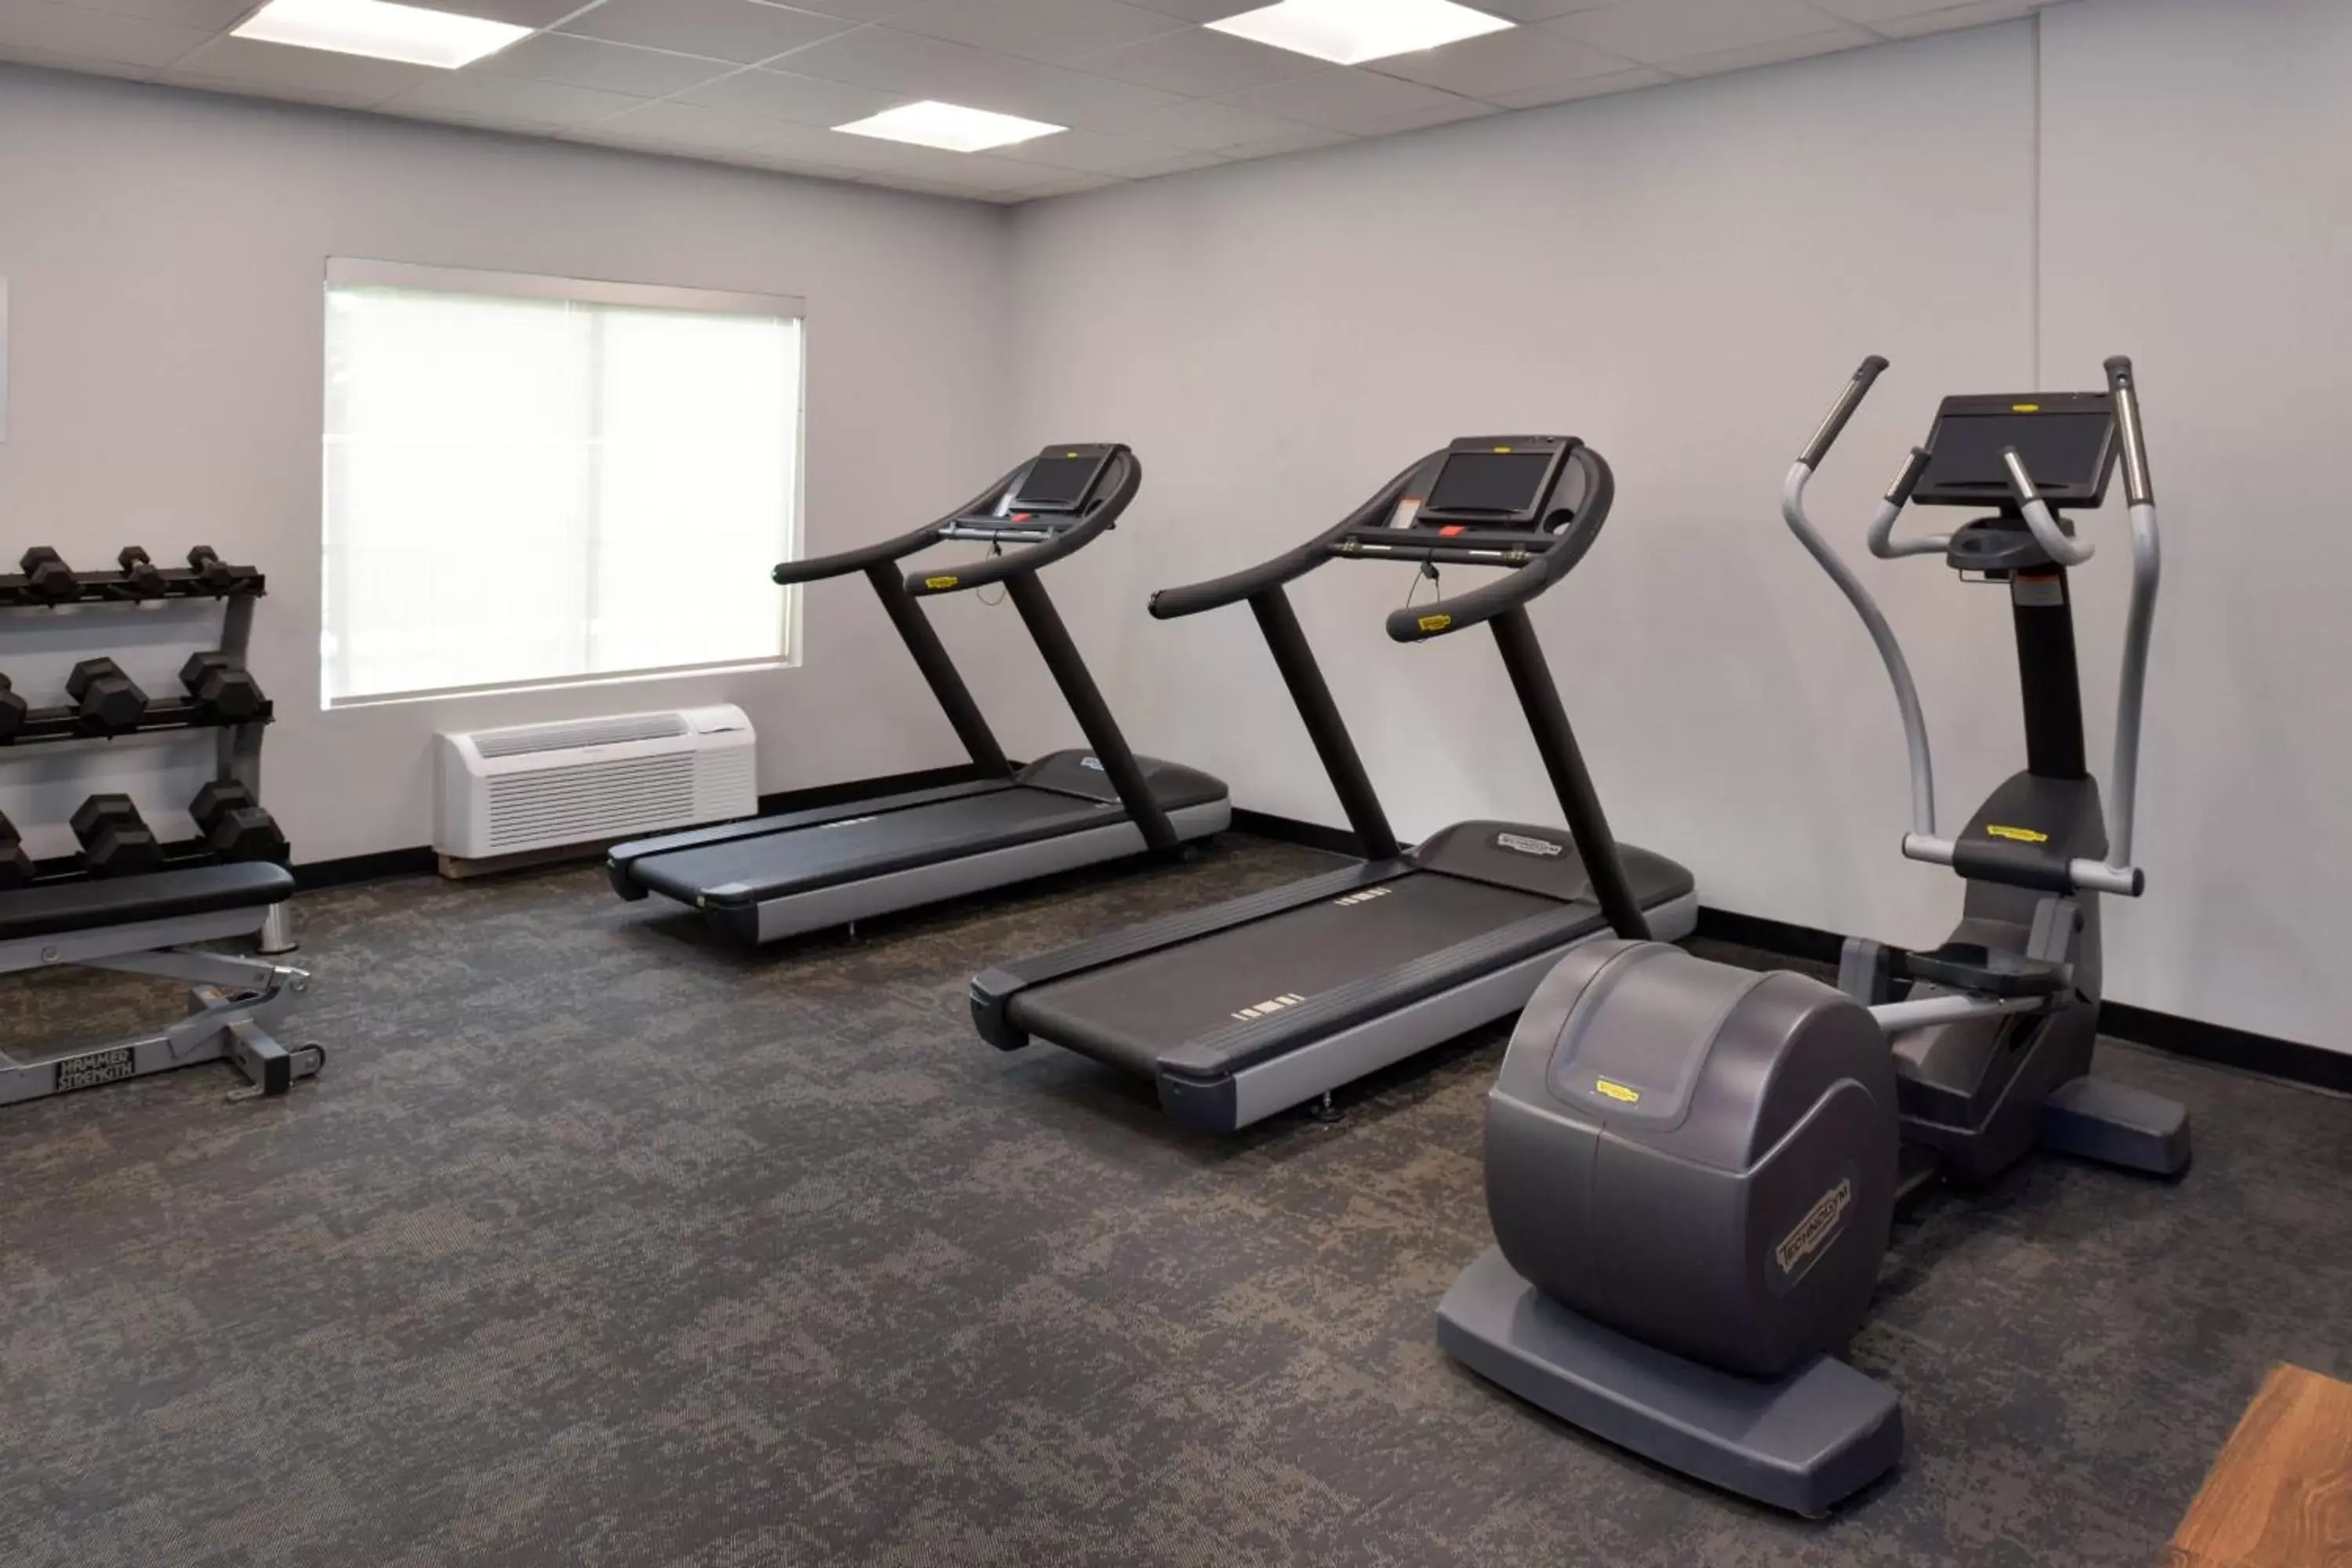 Fitness centre/facilities, Fitness Center/Facilities in Fairfield Inn Arlington Near Six Flags